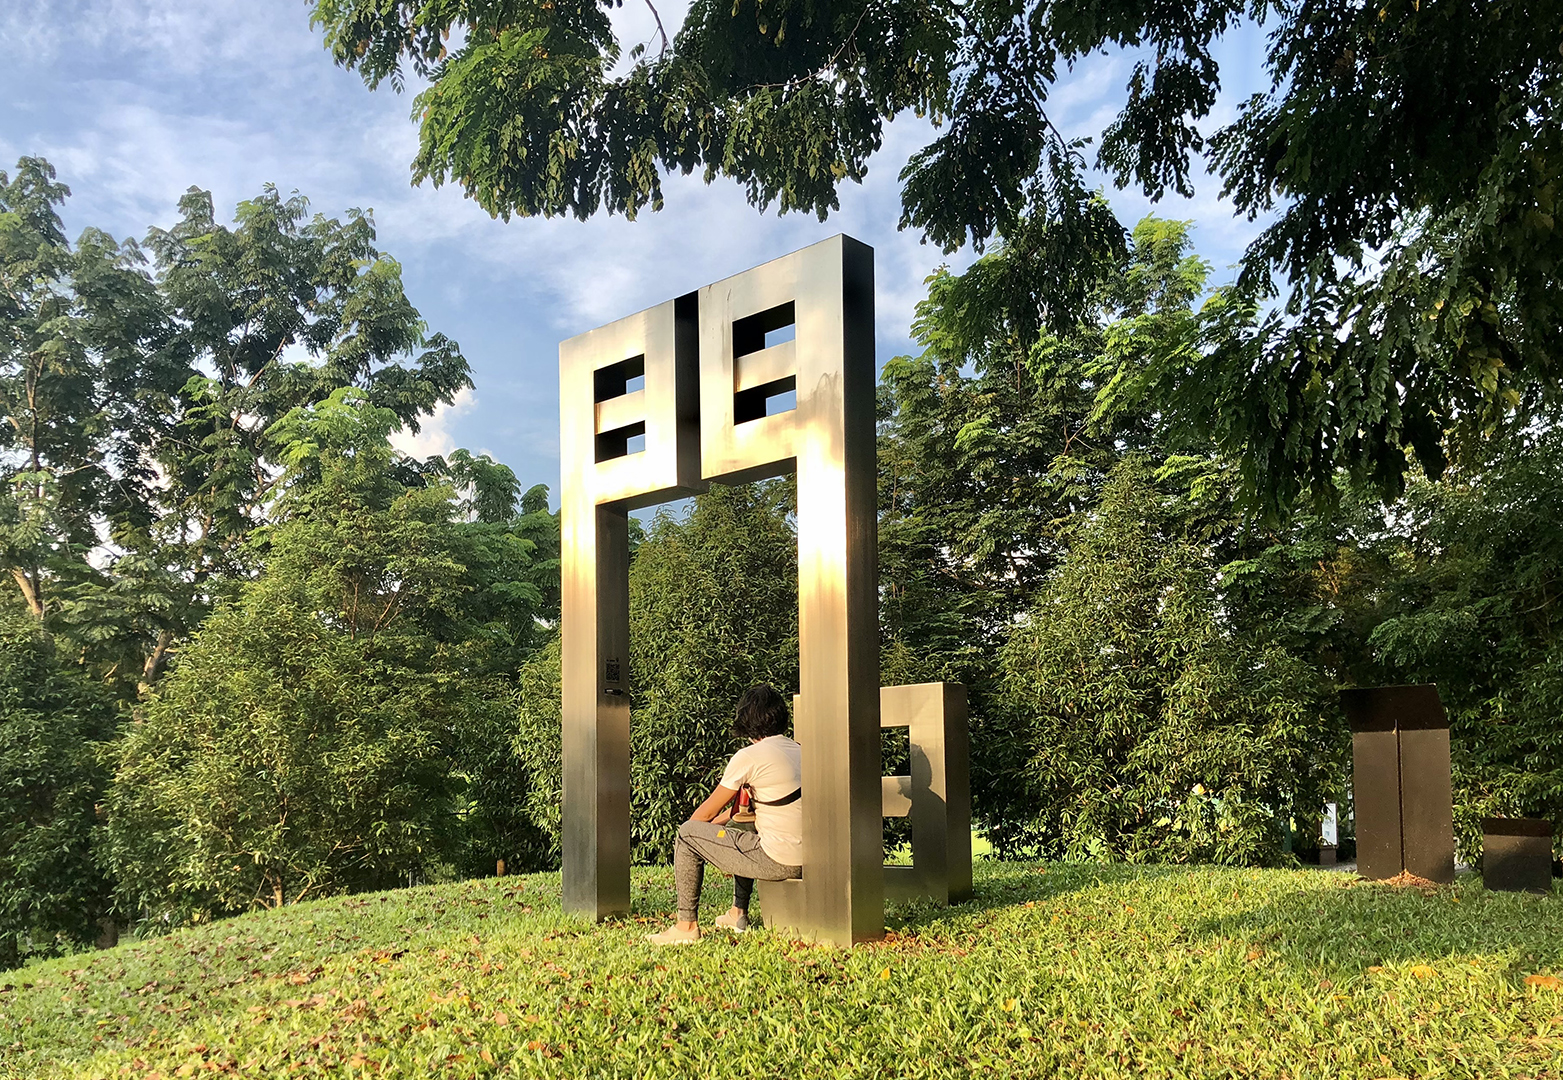 a park goer sitting by the jian rewritten public art sculpture